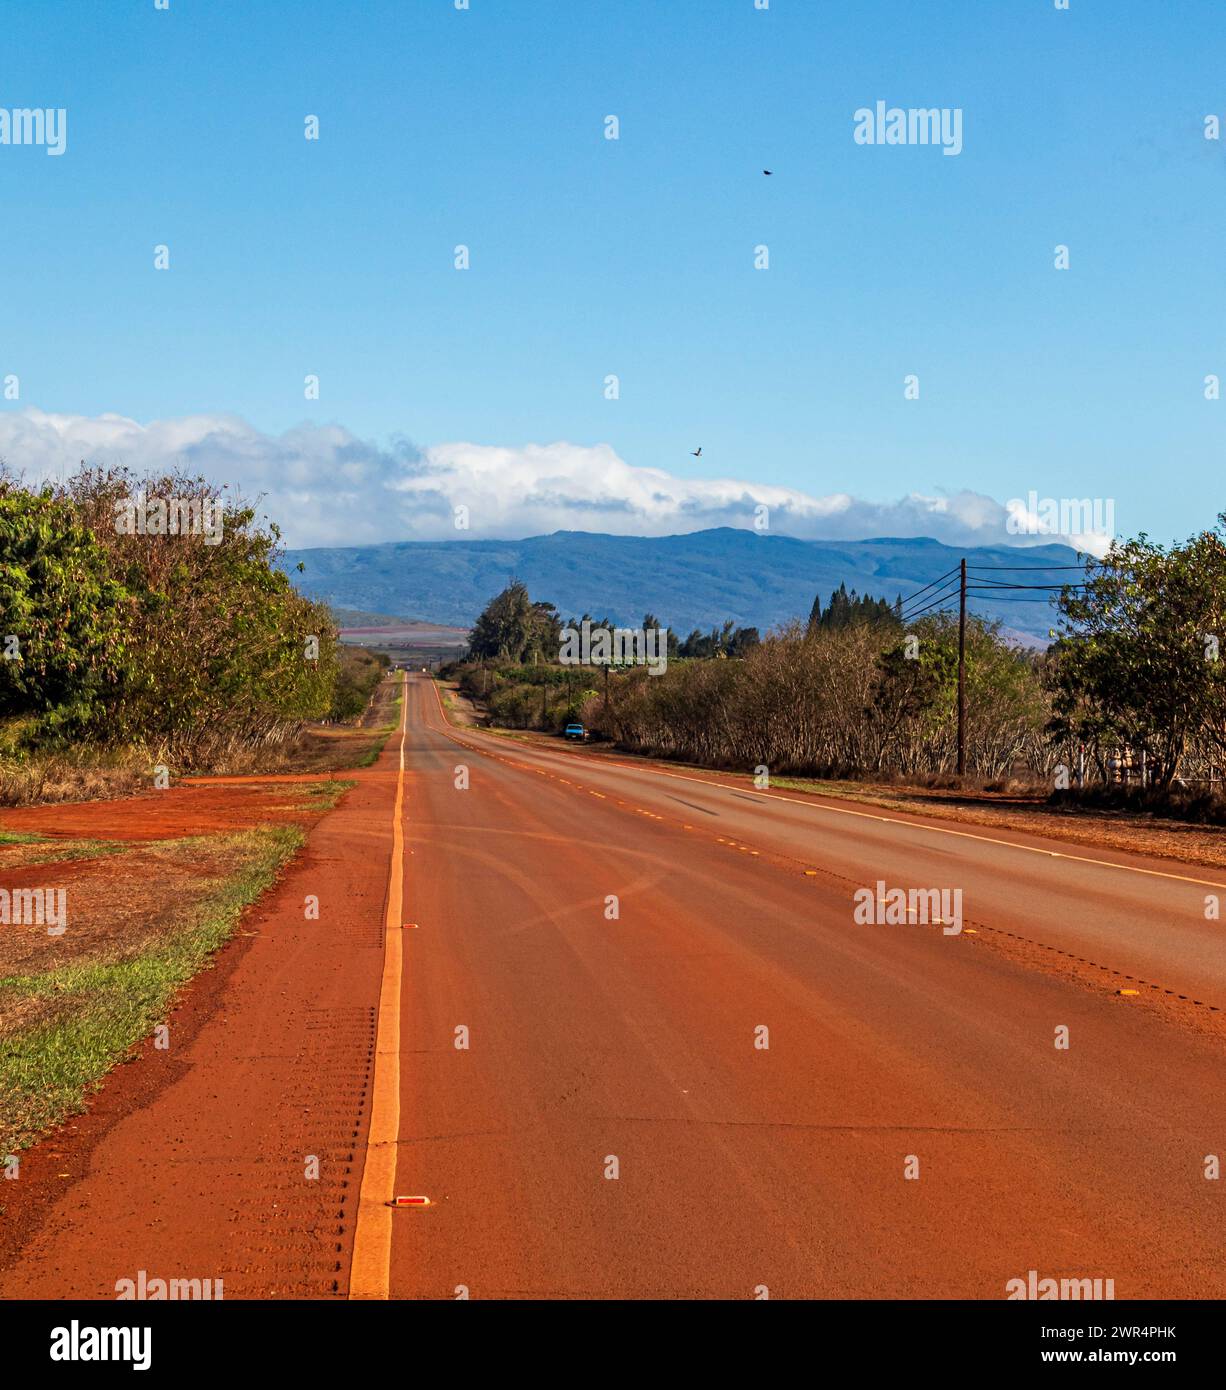 Strada principale su Molokai, Hawaii. Terra rossa o laterite copre la strada, derivante da antichi vulcani. Foto Stock